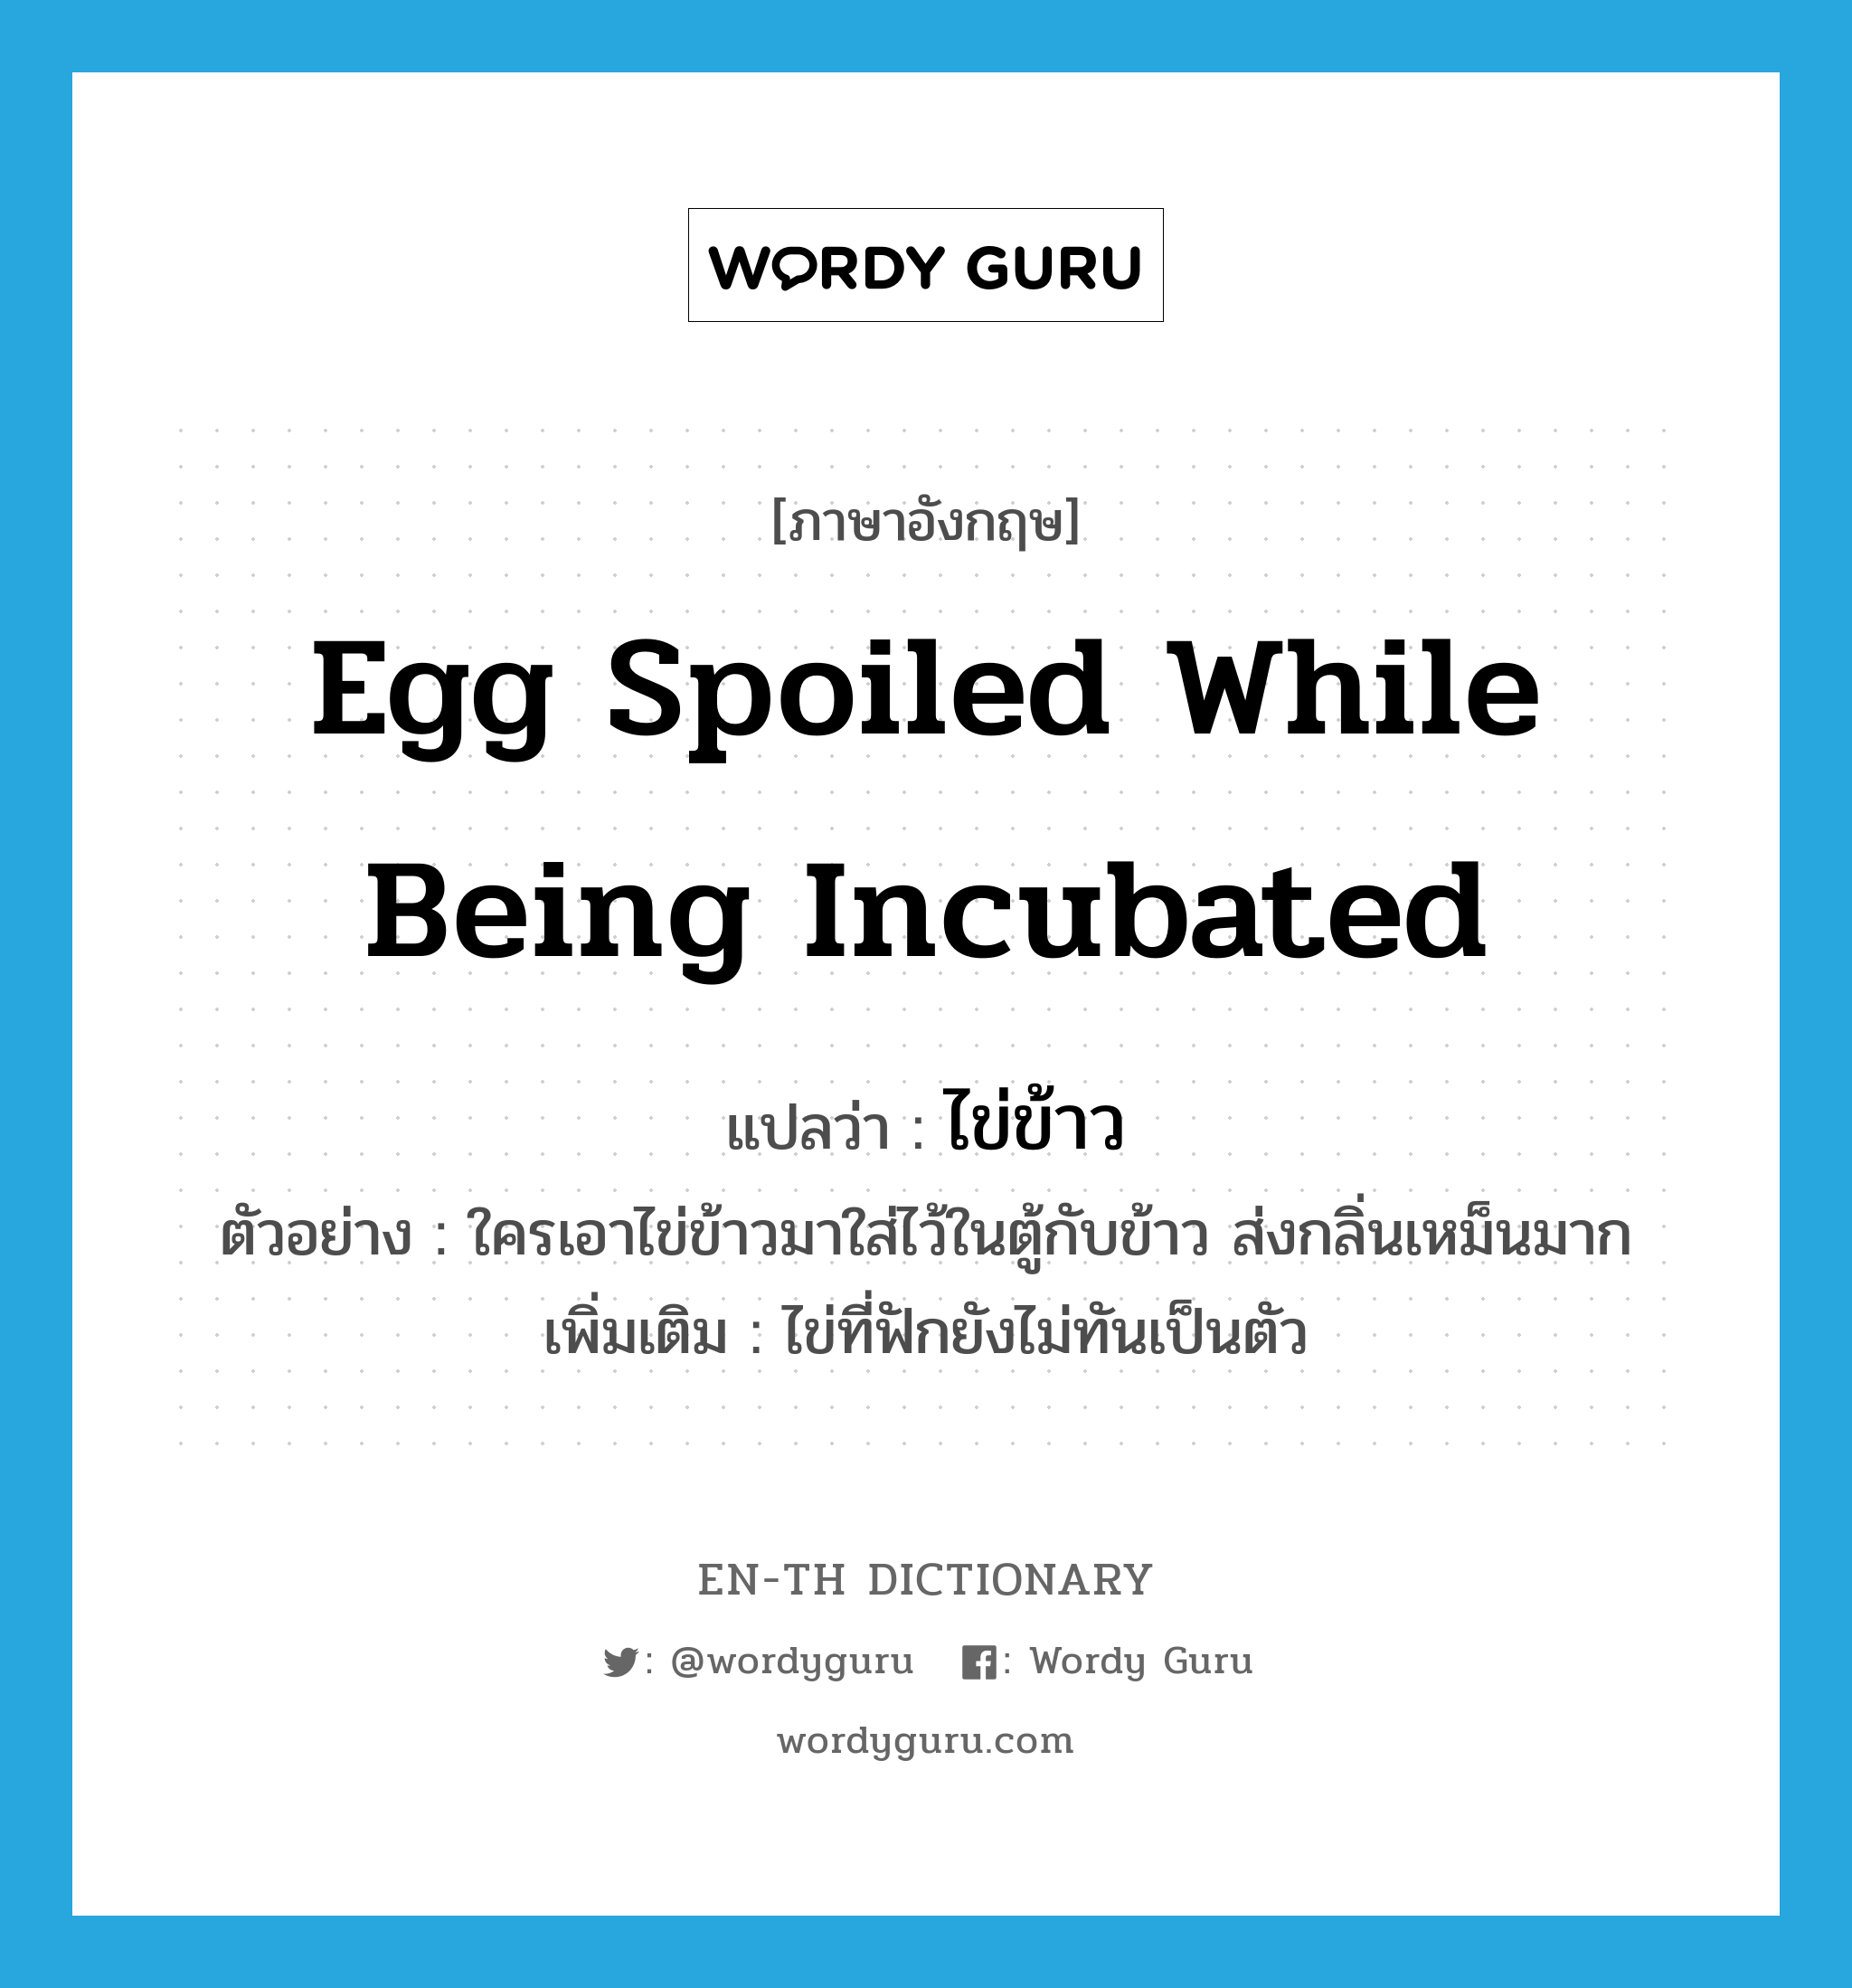 ไข่ข้าว ภาษาอังกฤษ?, คำศัพท์ภาษาอังกฤษ ไข่ข้าว แปลว่า egg spoiled while being incubated ประเภท N ตัวอย่าง ใครเอาไข่ข้าวมาใส่ไว้ในตู้กับข้าว ส่งกลิ่นเหม็นมาก เพิ่มเติม ไข่ที่ฟักยังไม่ทันเป็นตัว หมวด N